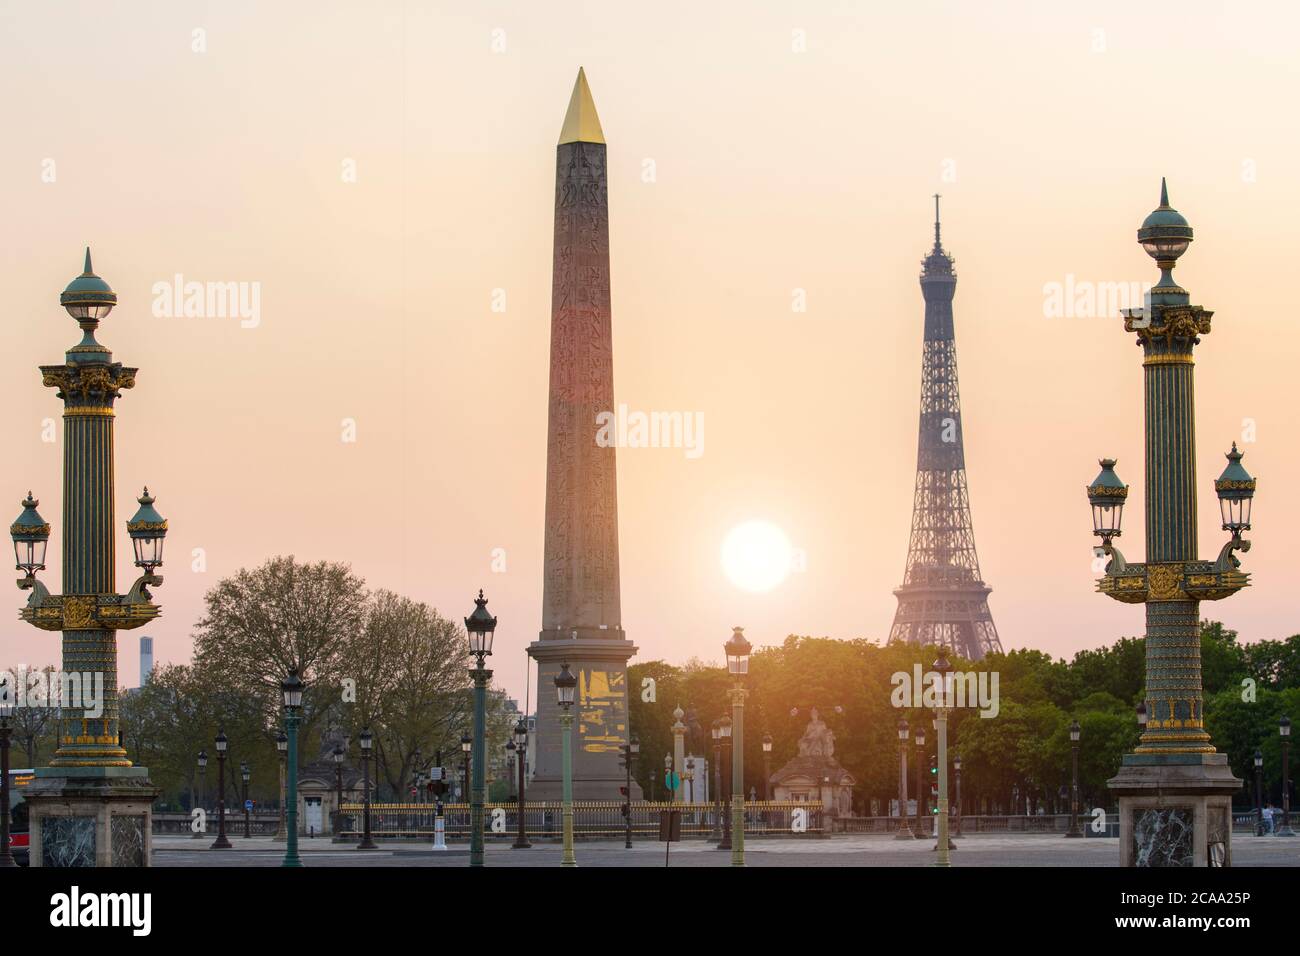 Place de la Concorde de la plaza de la Concordia es una de las principales plazas públicas en París, Francia Foto de stock